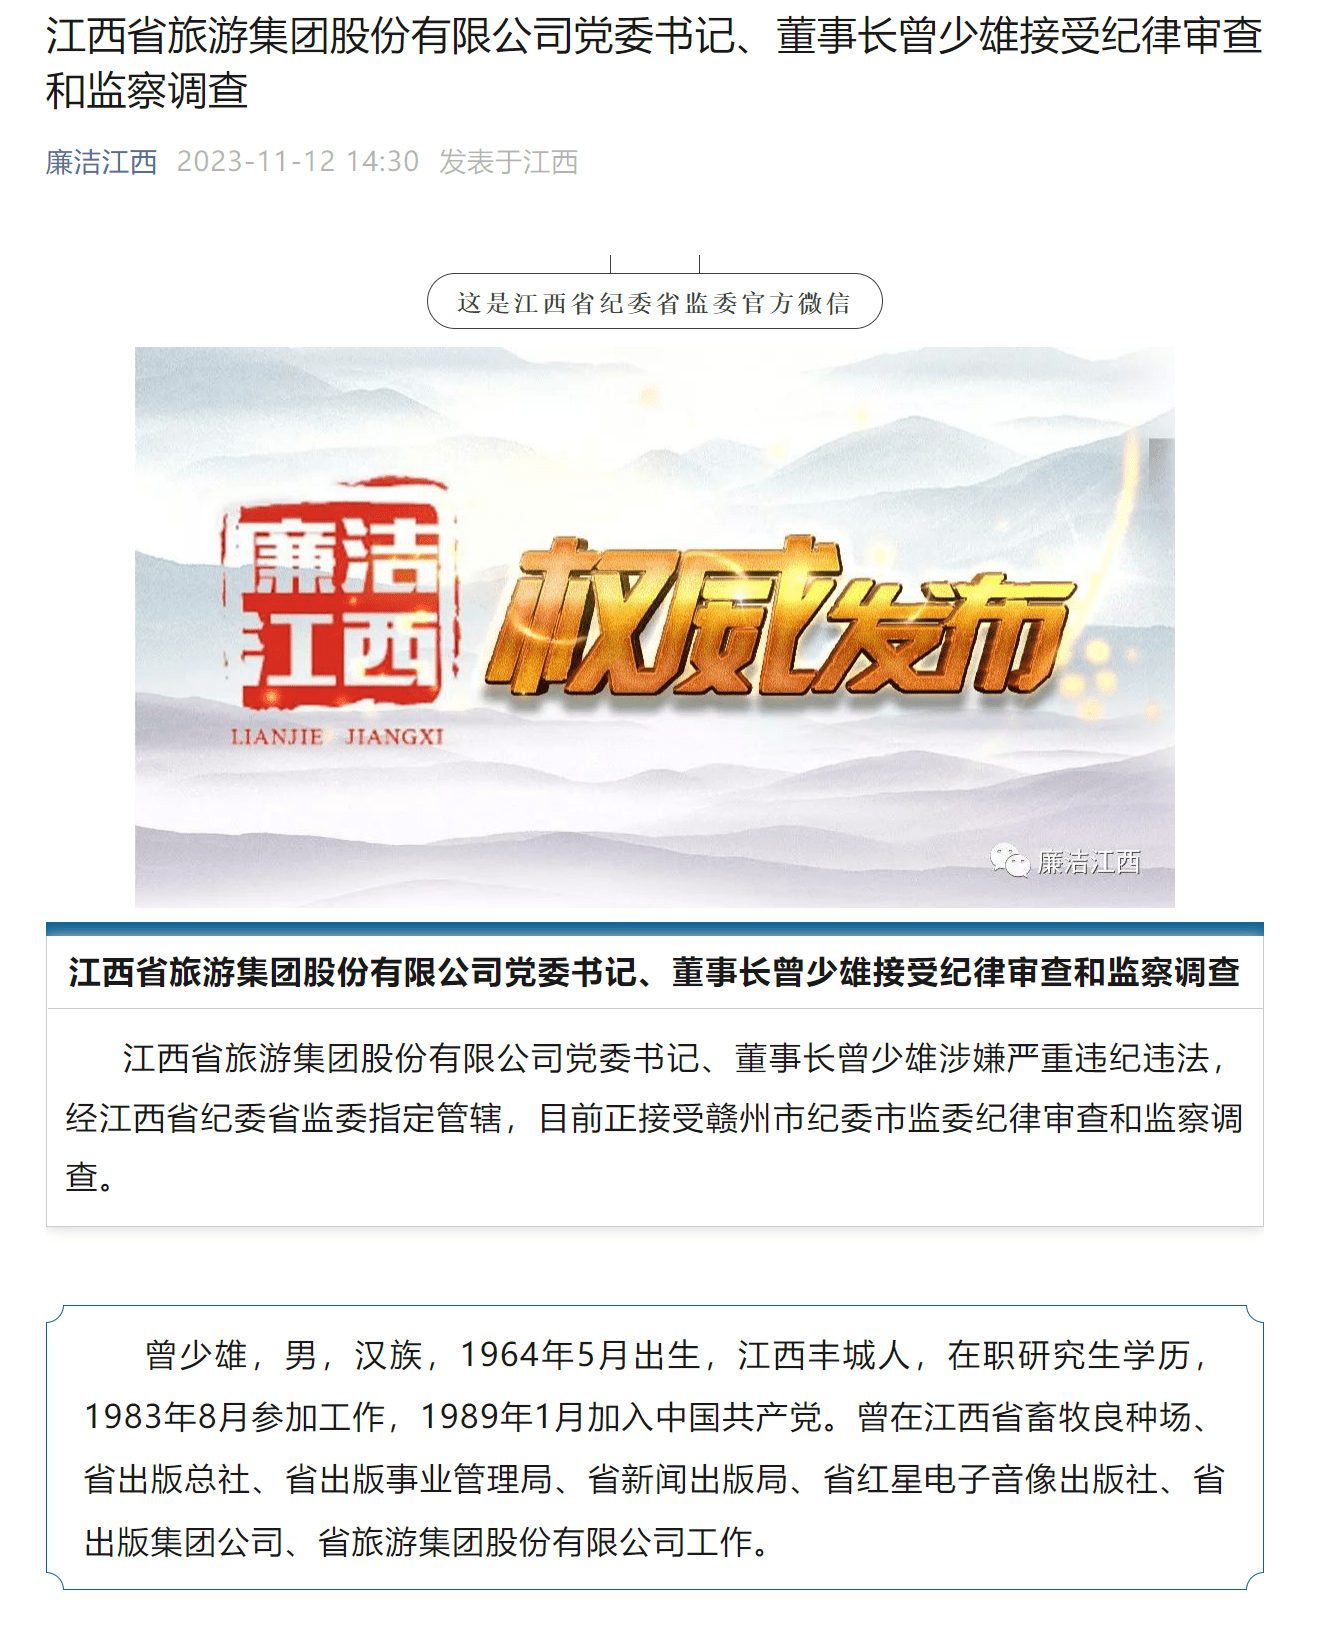 江西省旅游集团股份有限公司党委书记、董事长曾少雄接受审查调查